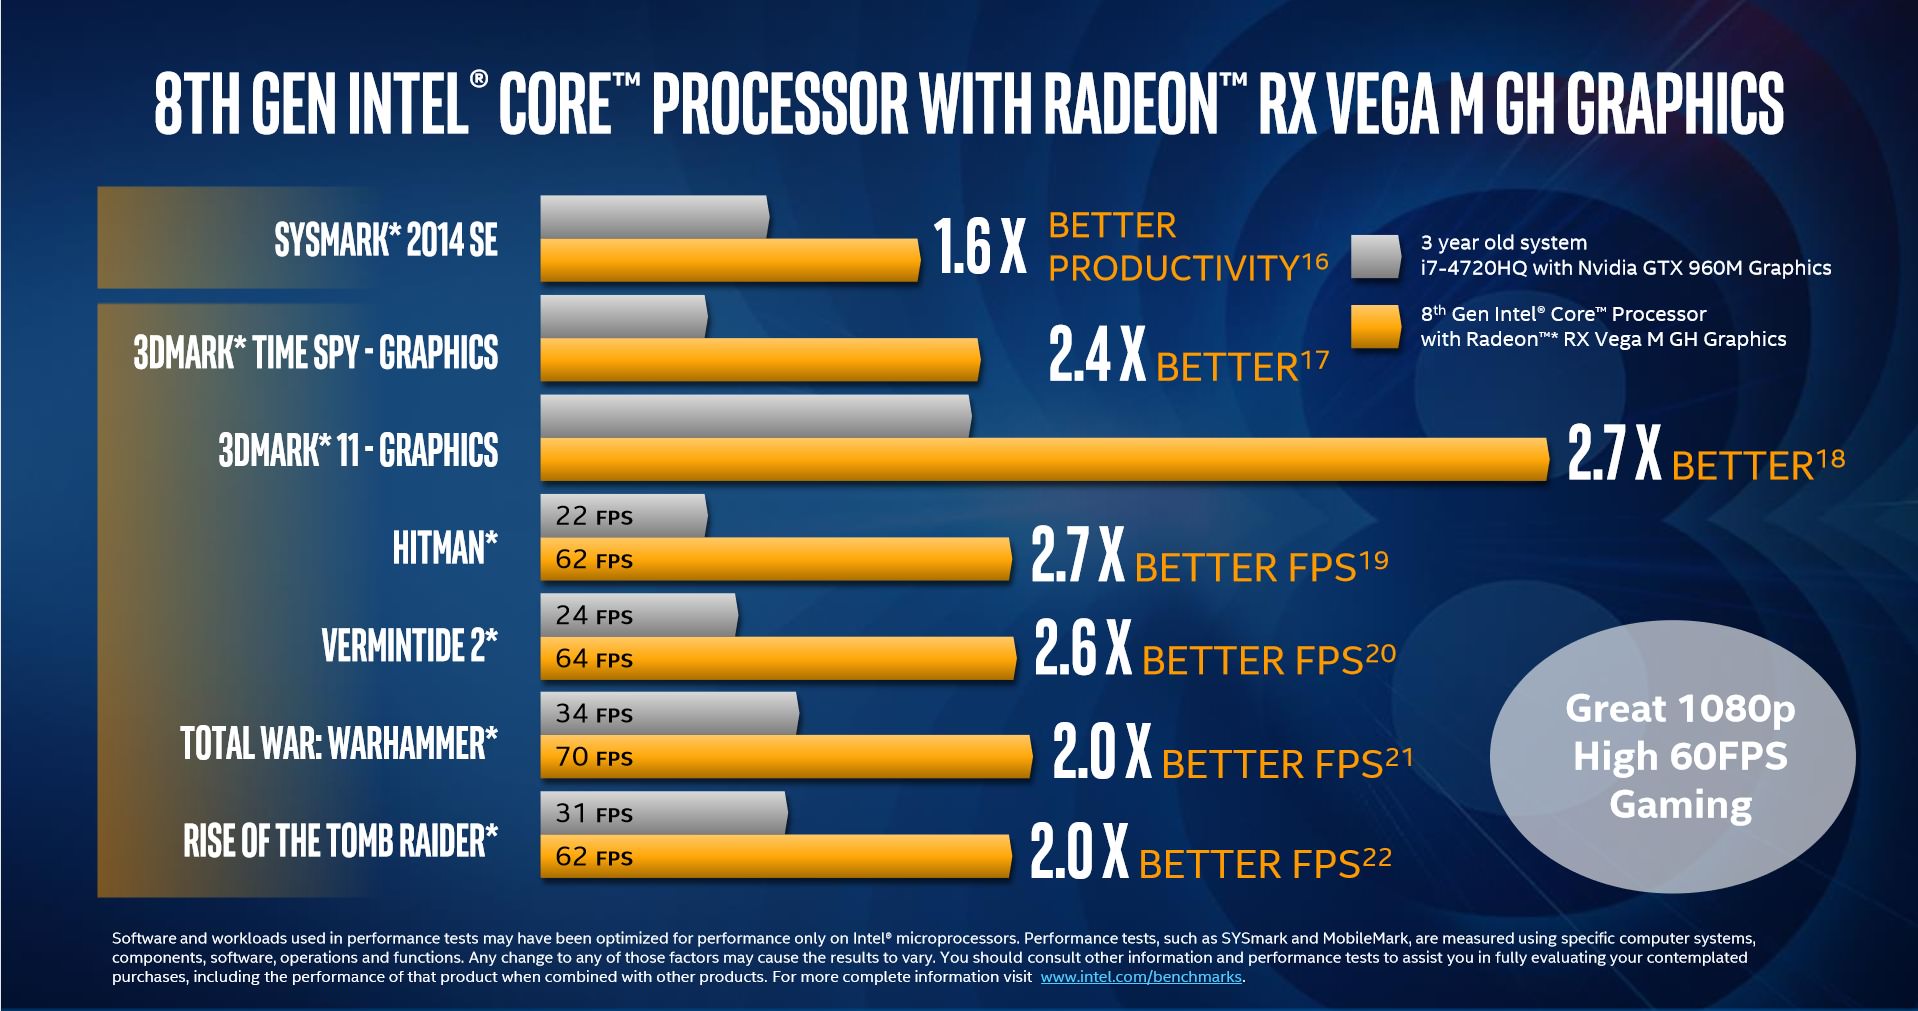 اینتل به طور رسمی از پردازنده مشترک با AMD رونمایی کرد